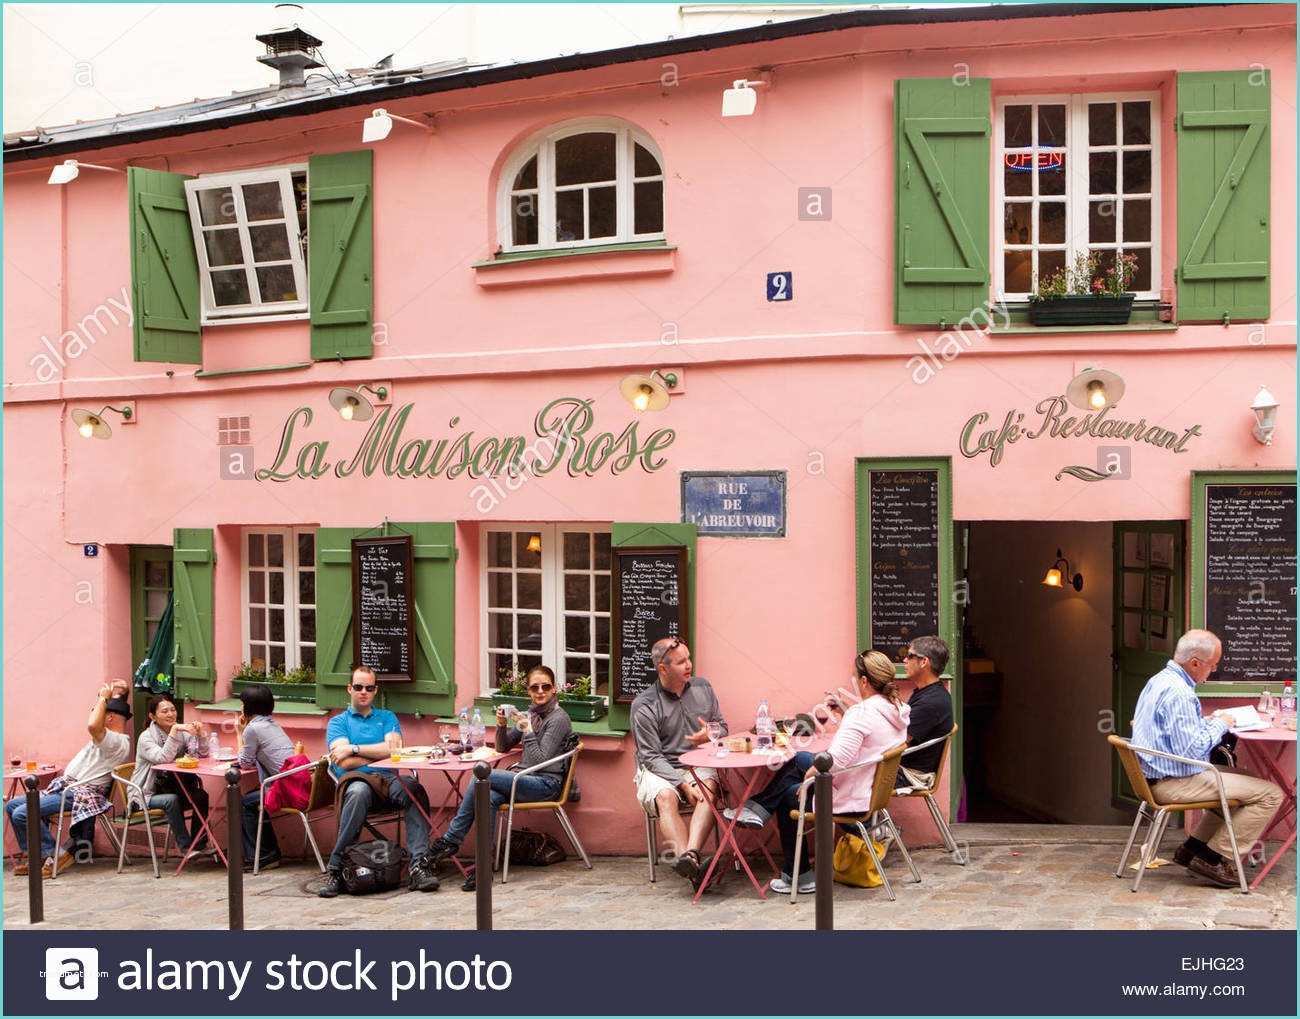 Maison Stock Images Outdoor Eating at La Maison Rose Cafe Montmartre Paris